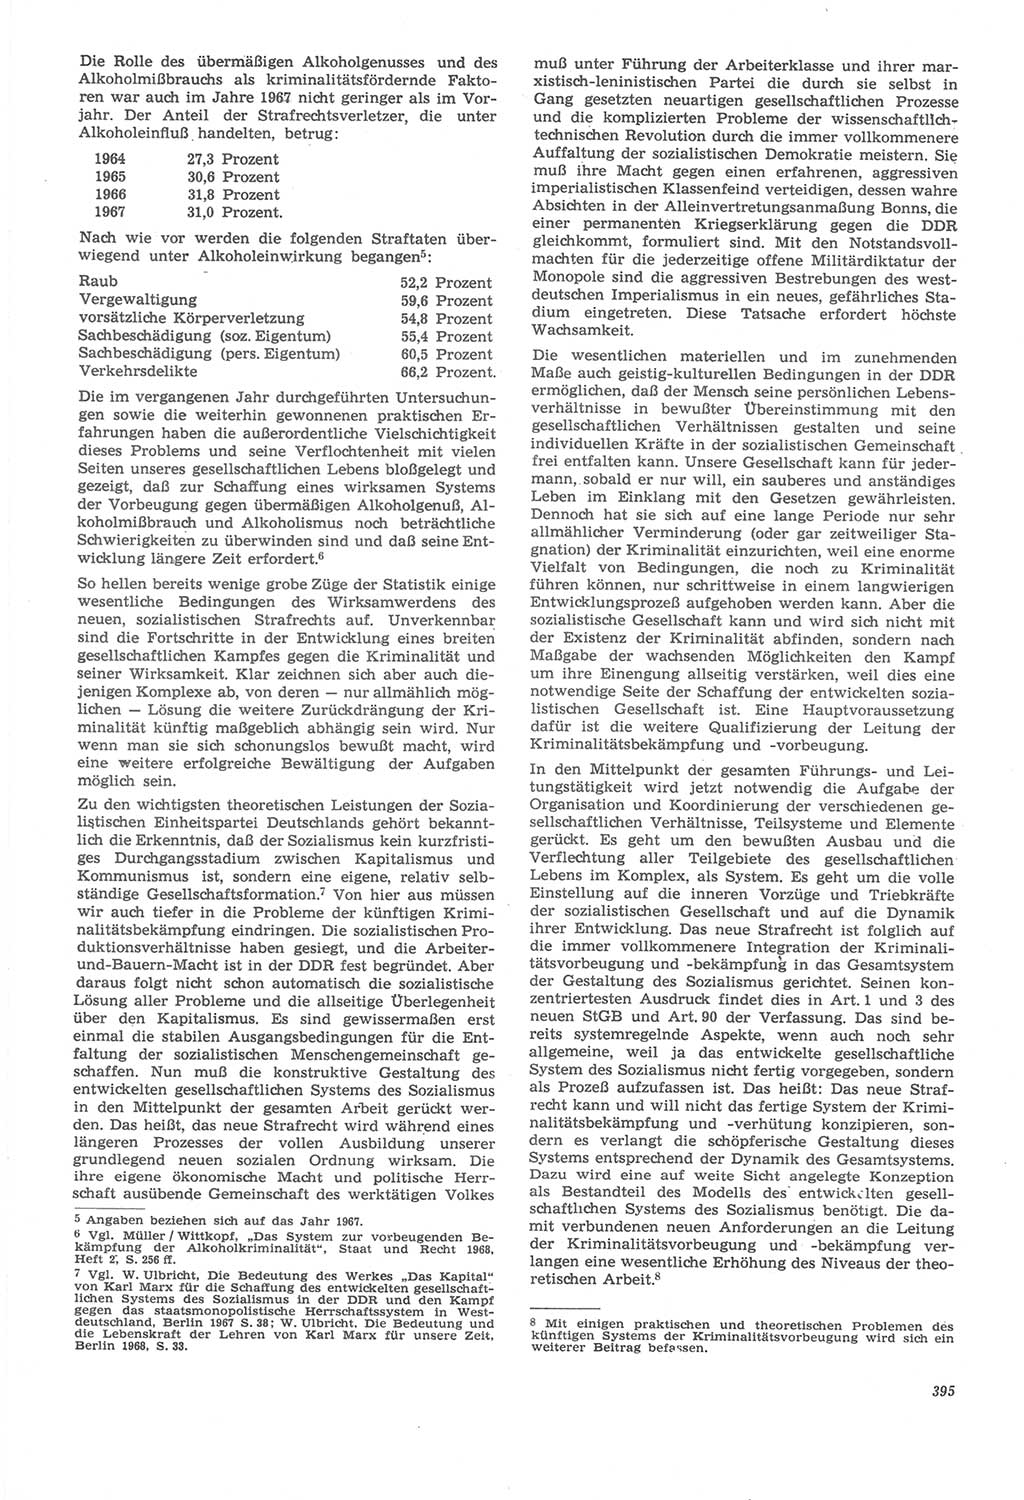 Neue Justiz (NJ), Zeitschrift für Recht und Rechtswissenschaft [Deutsche Demokratische Republik (DDR)], 22. Jahrgang 1968, Seite 395 (NJ DDR 1968, S. 395)